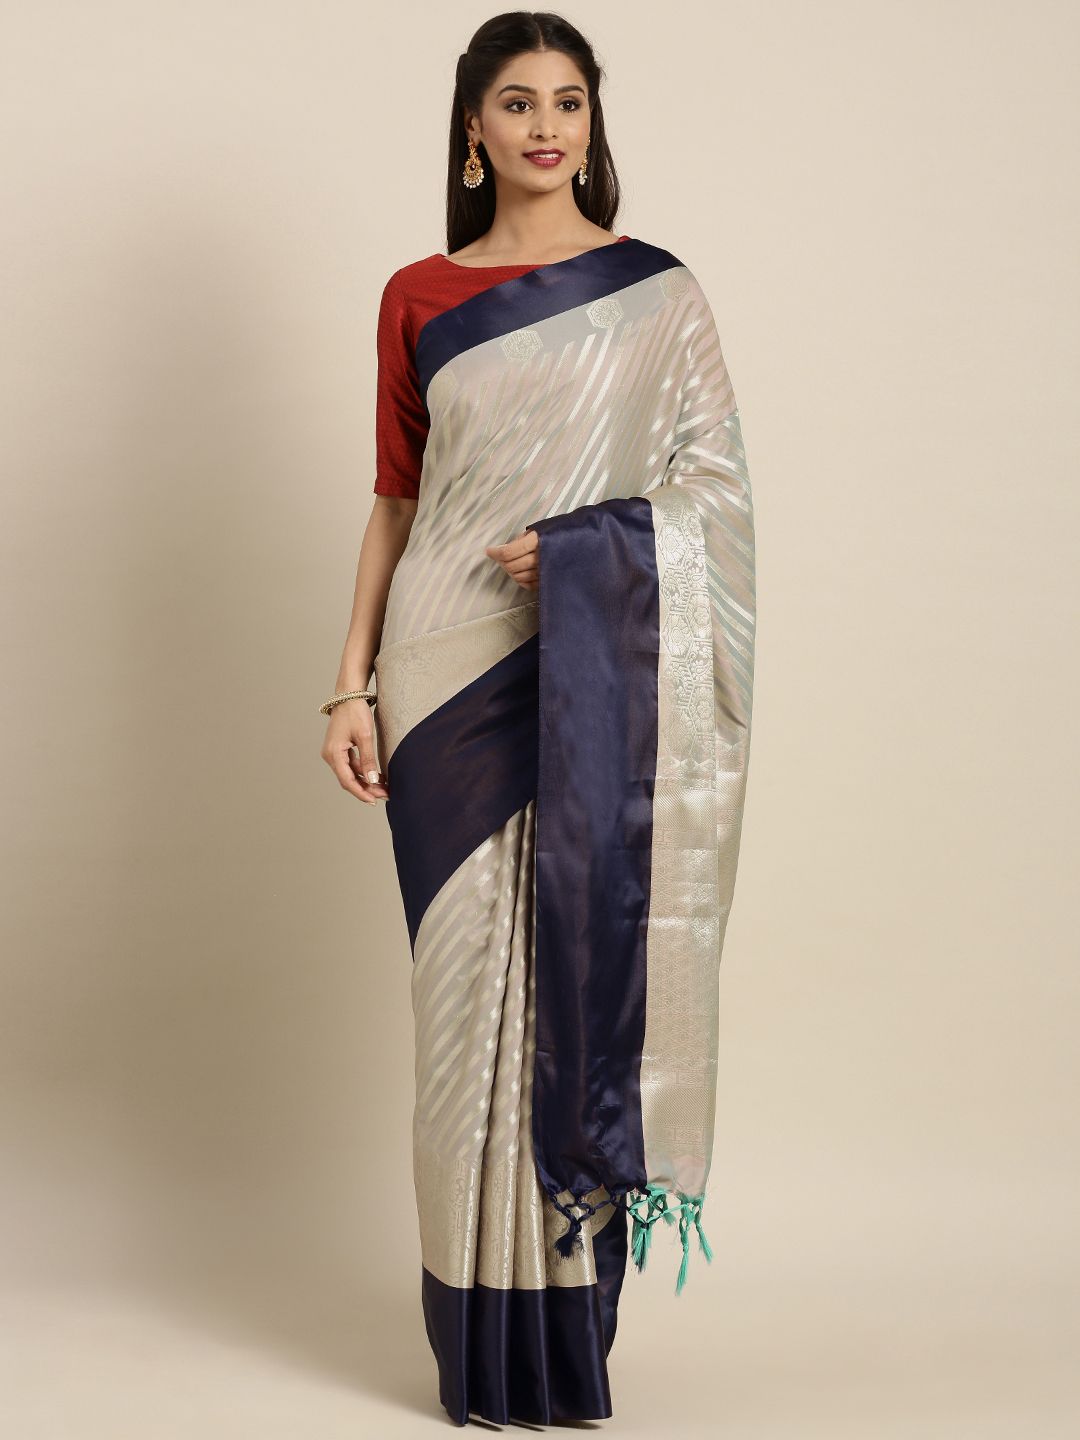 Varkala Silk Sarees Grey & Navy Blue Silk Blend Woven Design Kanjeevaram Saree Price in India